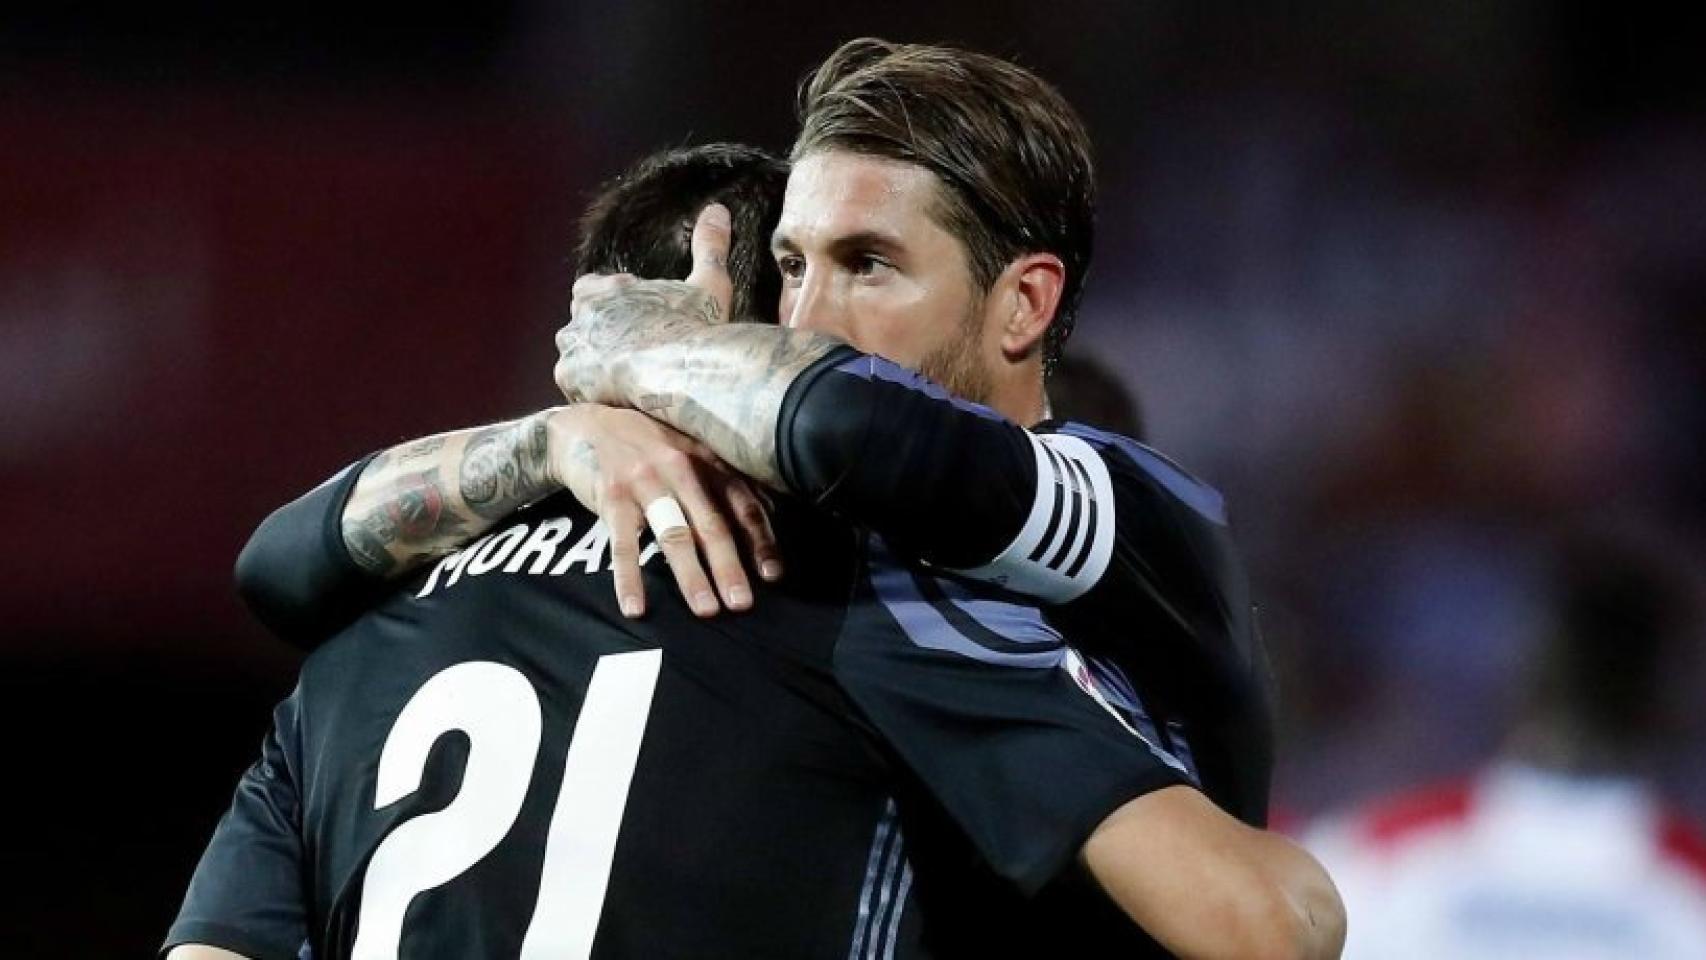 Ramos felicita a Morata